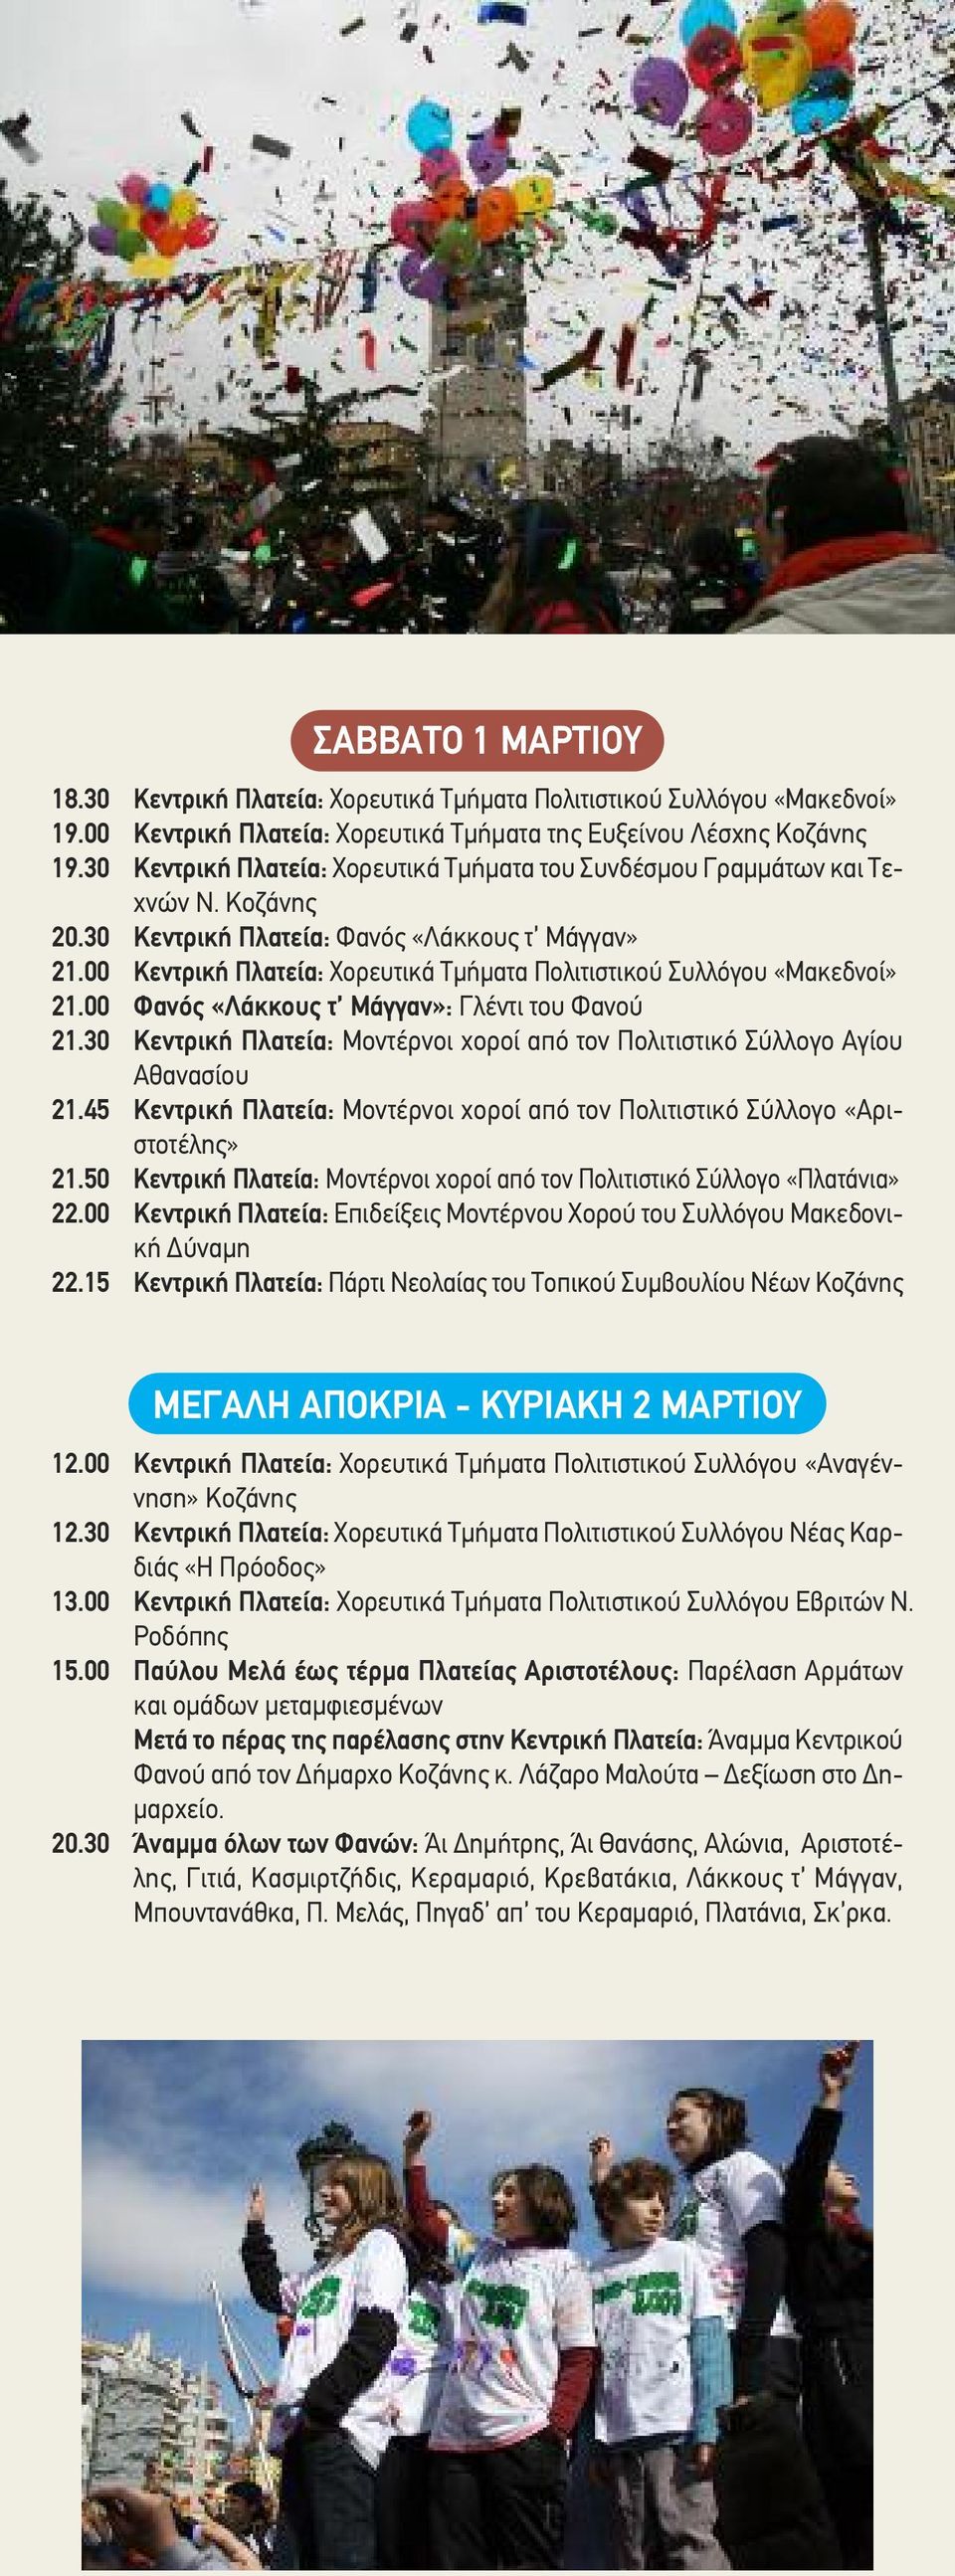 00 Κεντρική Πλατεία: Χορευτικά Τμήματα Πολιτιστικού Συλλόγου «Μακεδνοί» 21.00 Φανός «Λάκκους τ Μάγγαν»: Γλέντι του Φανού 21.